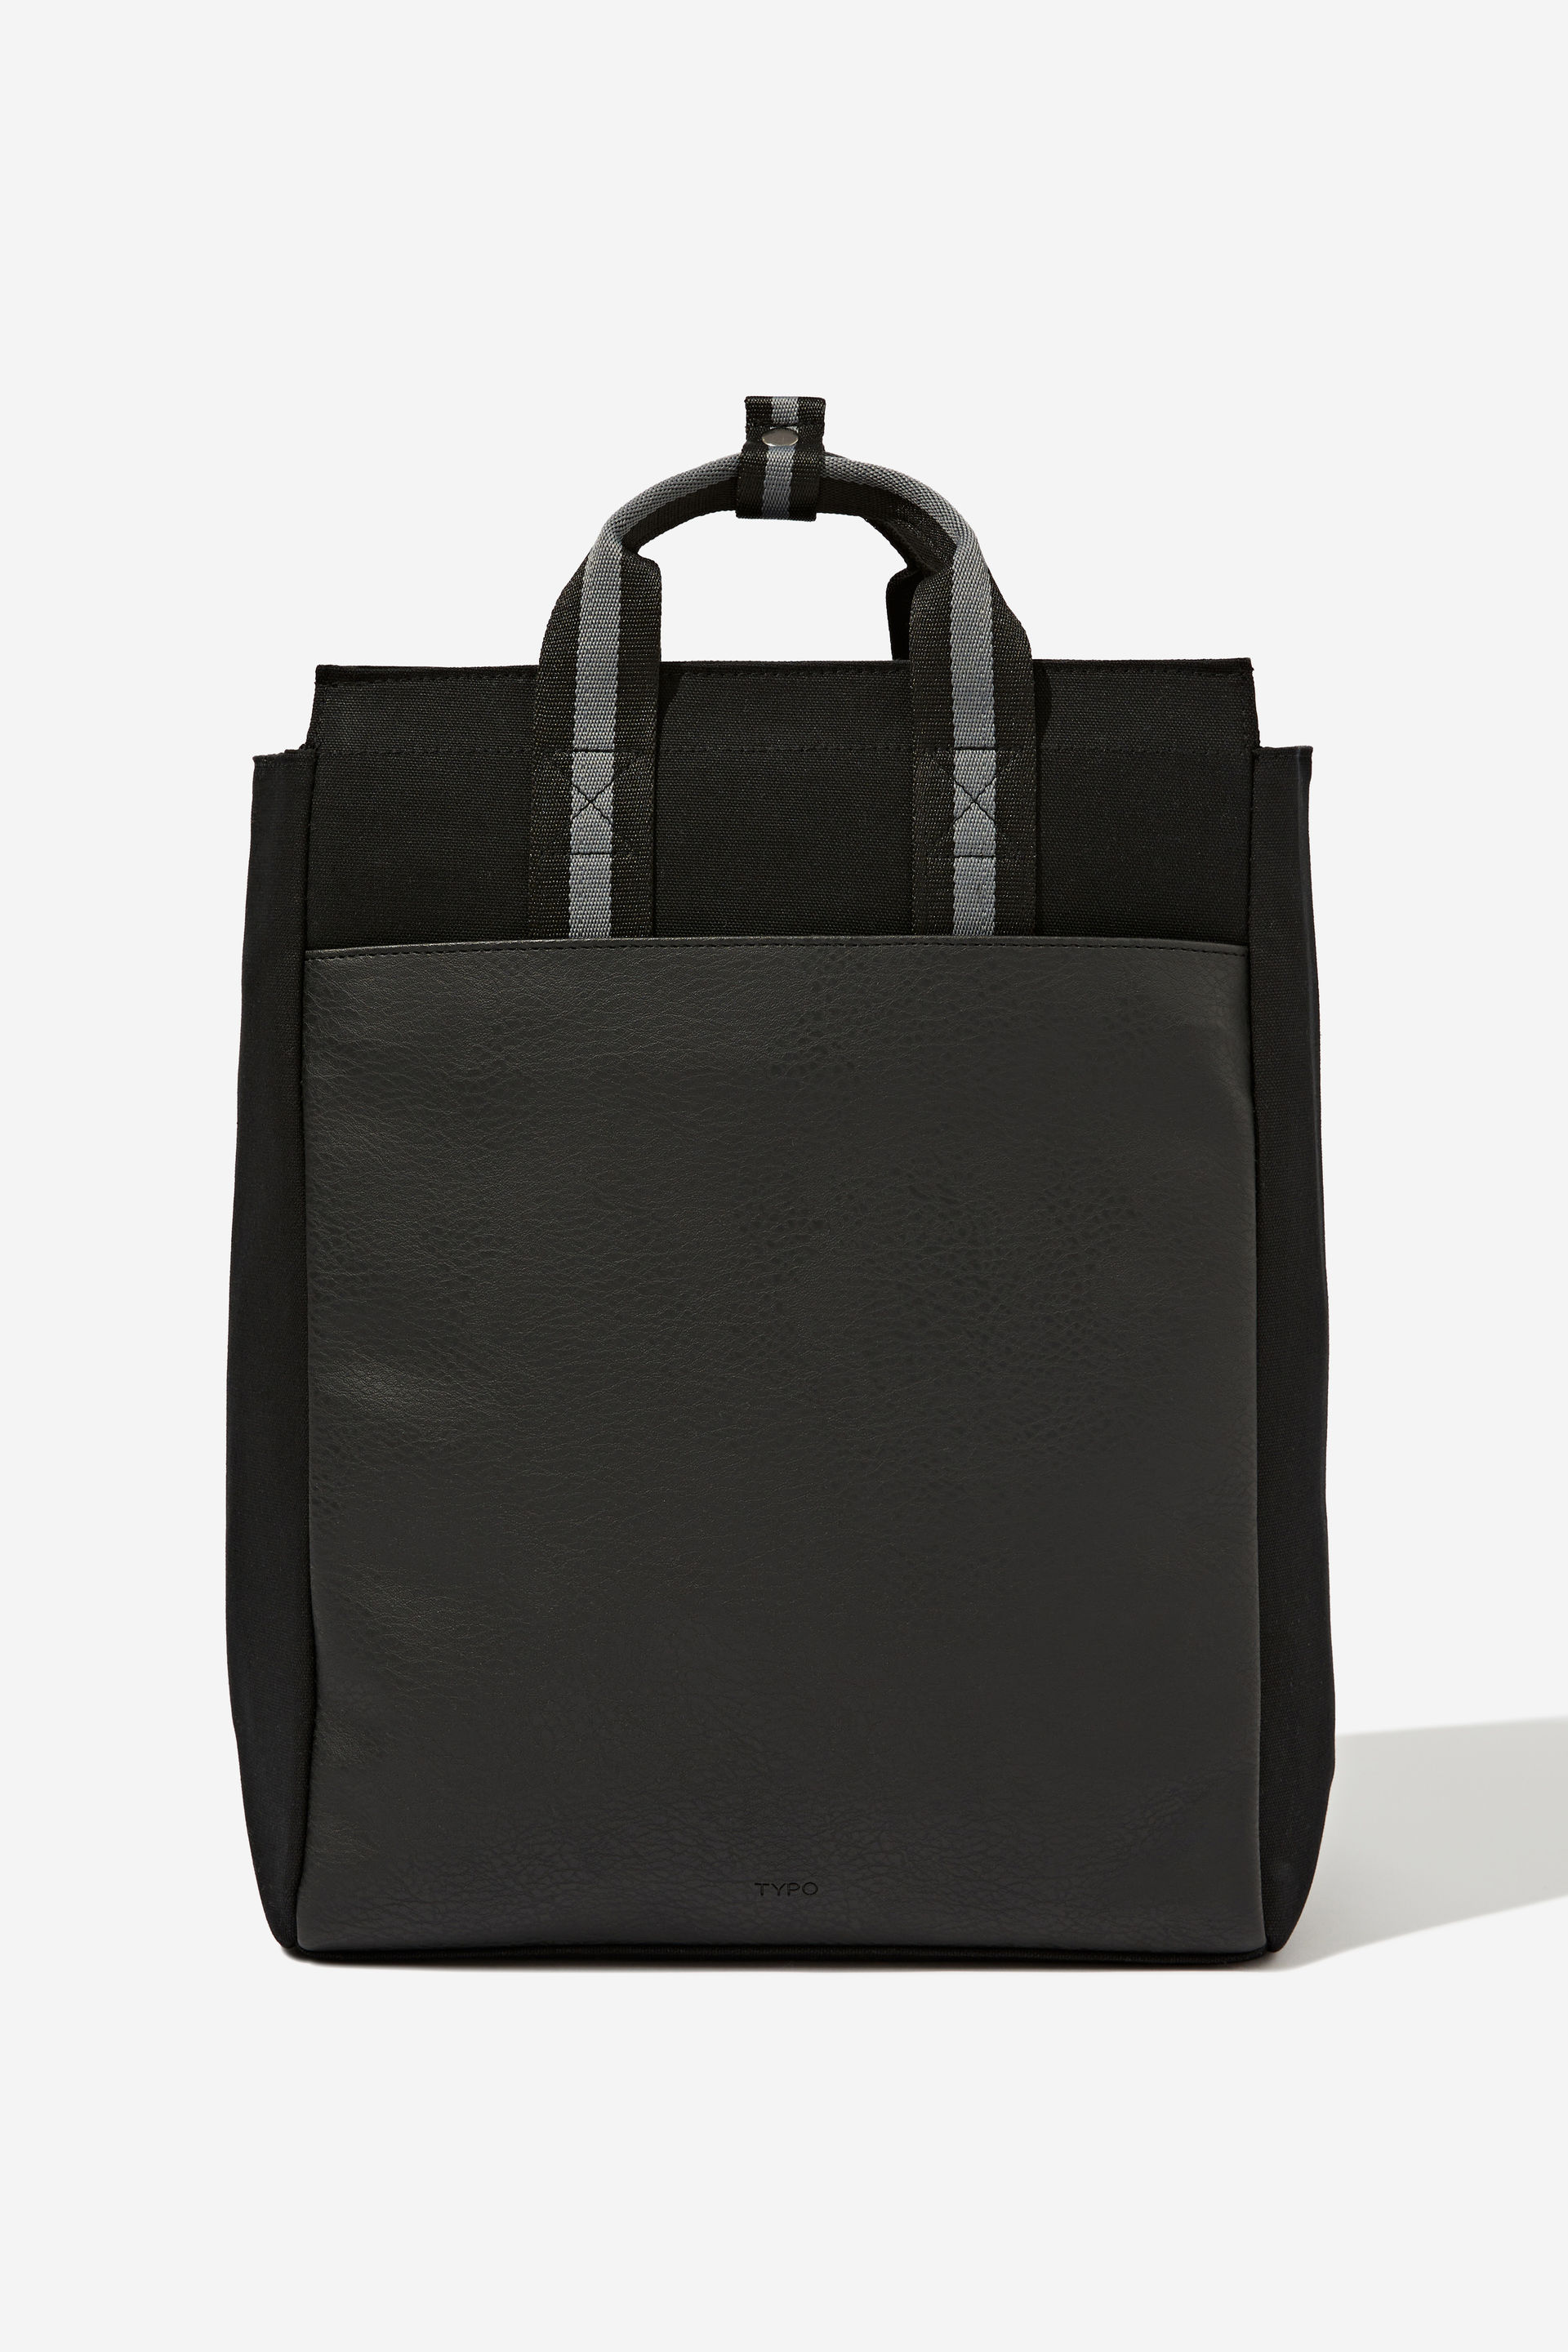 Typo - Essential Tote Backpack - Black